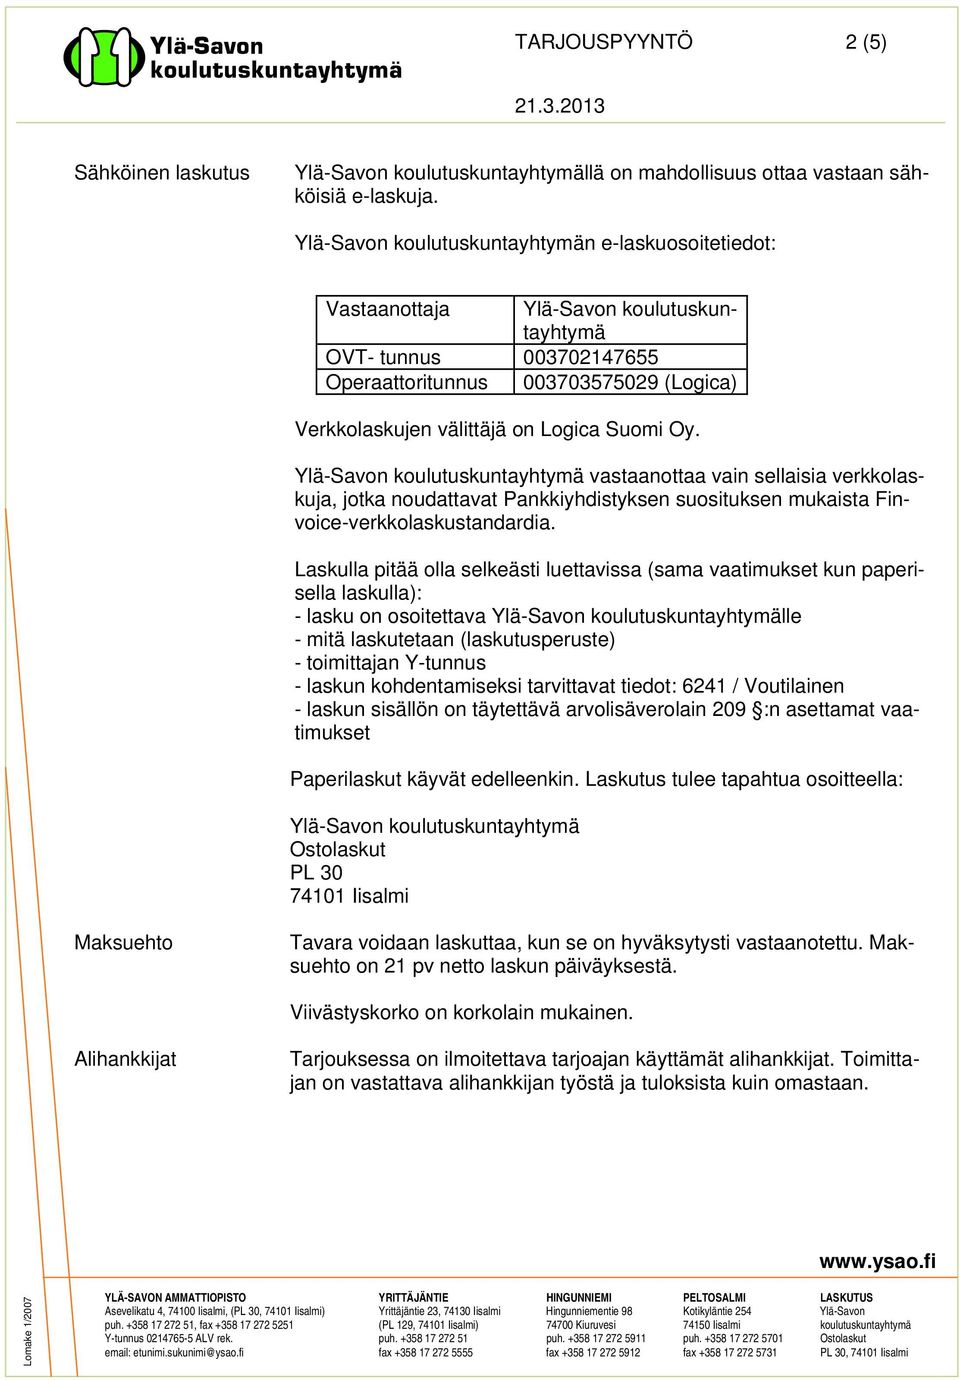 Suomi Oy. Ylä-Savon koulutuskuntayhtymä vastaanottaa vain sellaisia verkkolaskuja, jotka noudattavat Pankkiyhdistyksen suosituksen mukaista Finvoice-verkkolaskustandardia.